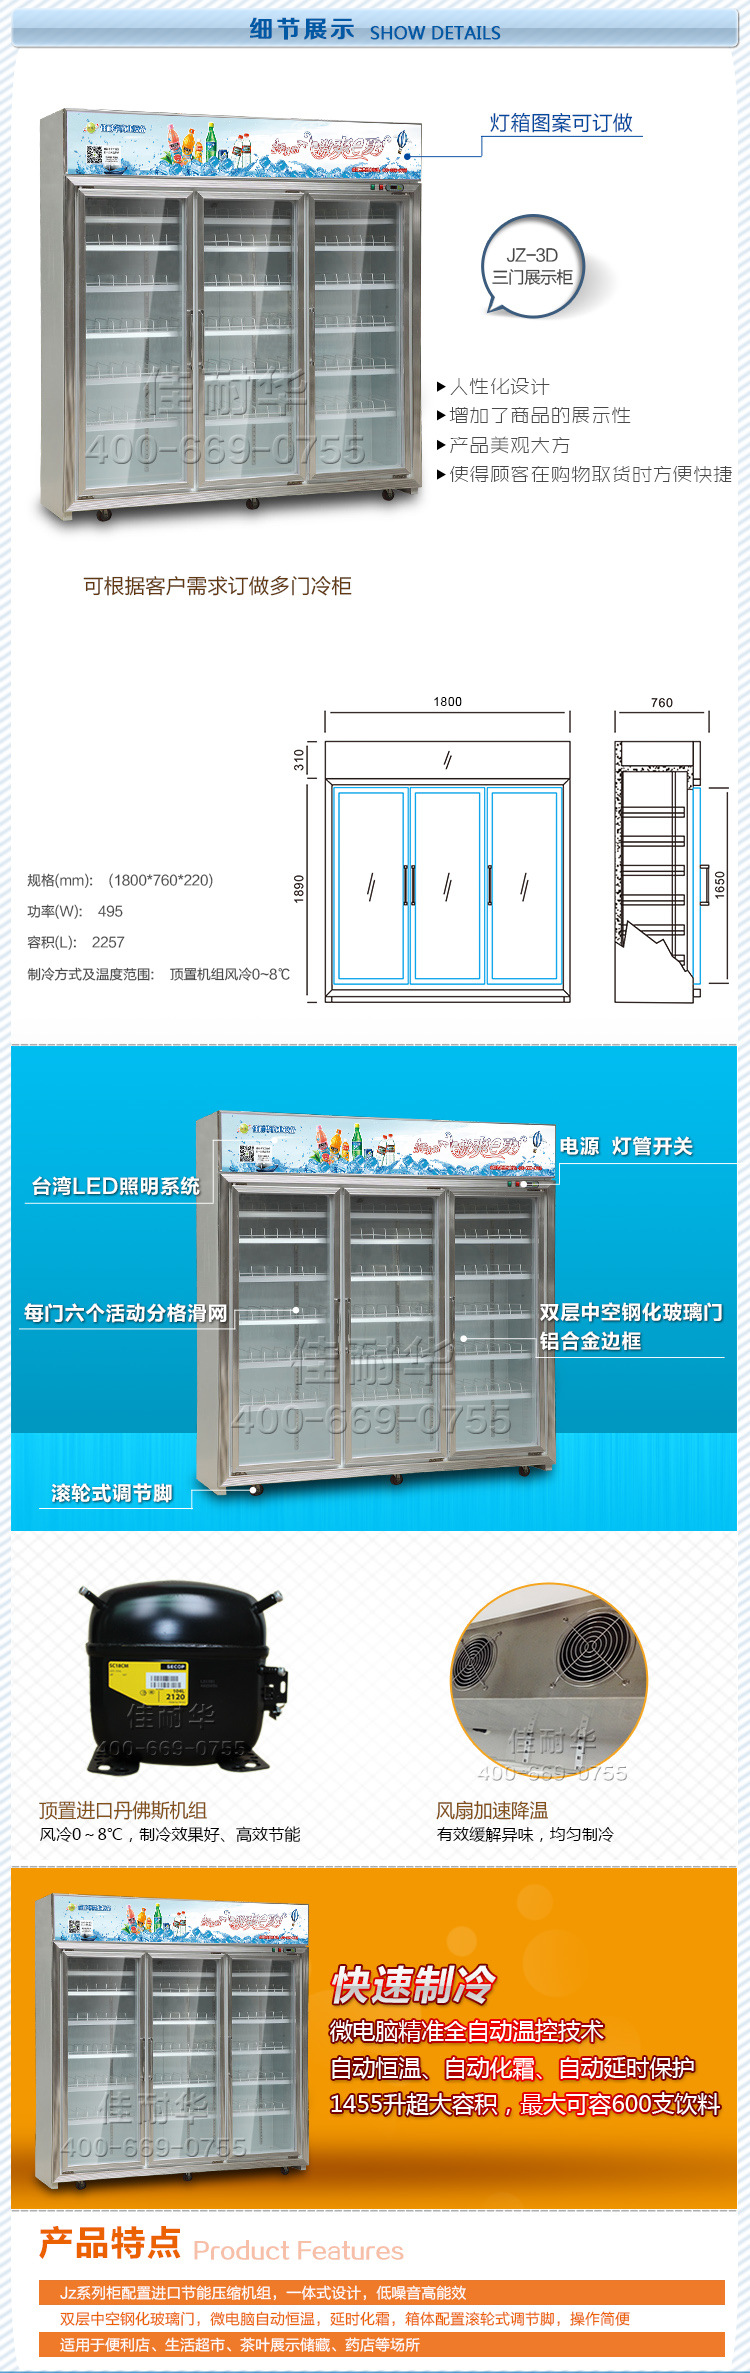 优惠促销保鲜柜冷冻设备  高档展示柜饮料冷藏柜  超市制冷设备示例图16